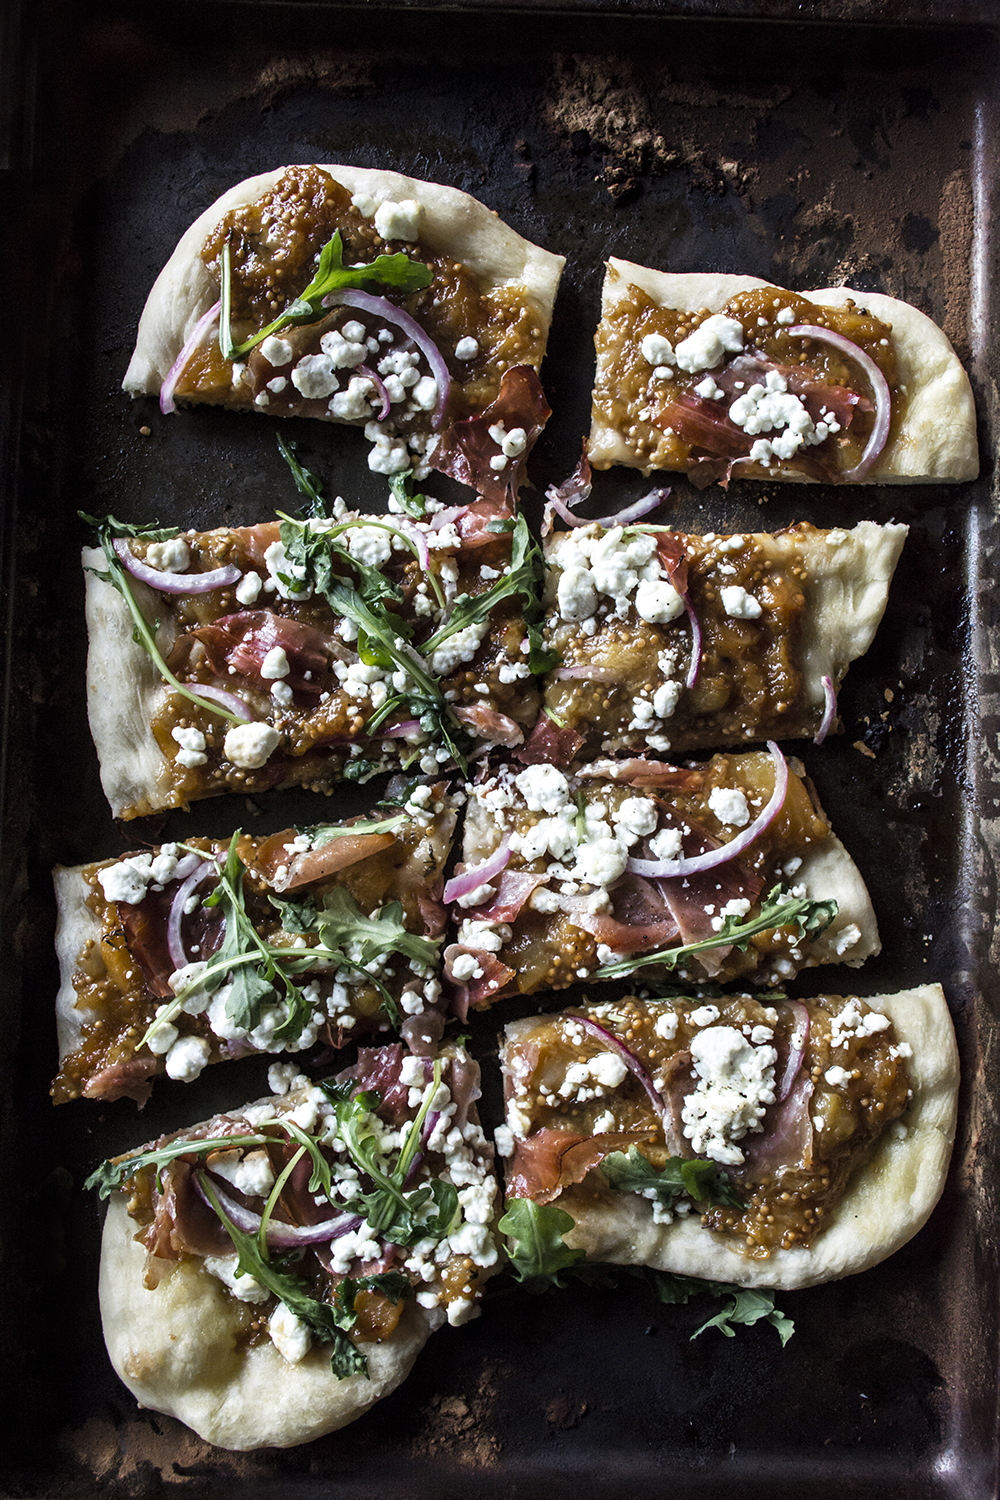 SEVEN UNIQUE PIZZA RECIPES TO MAKE AT HOME